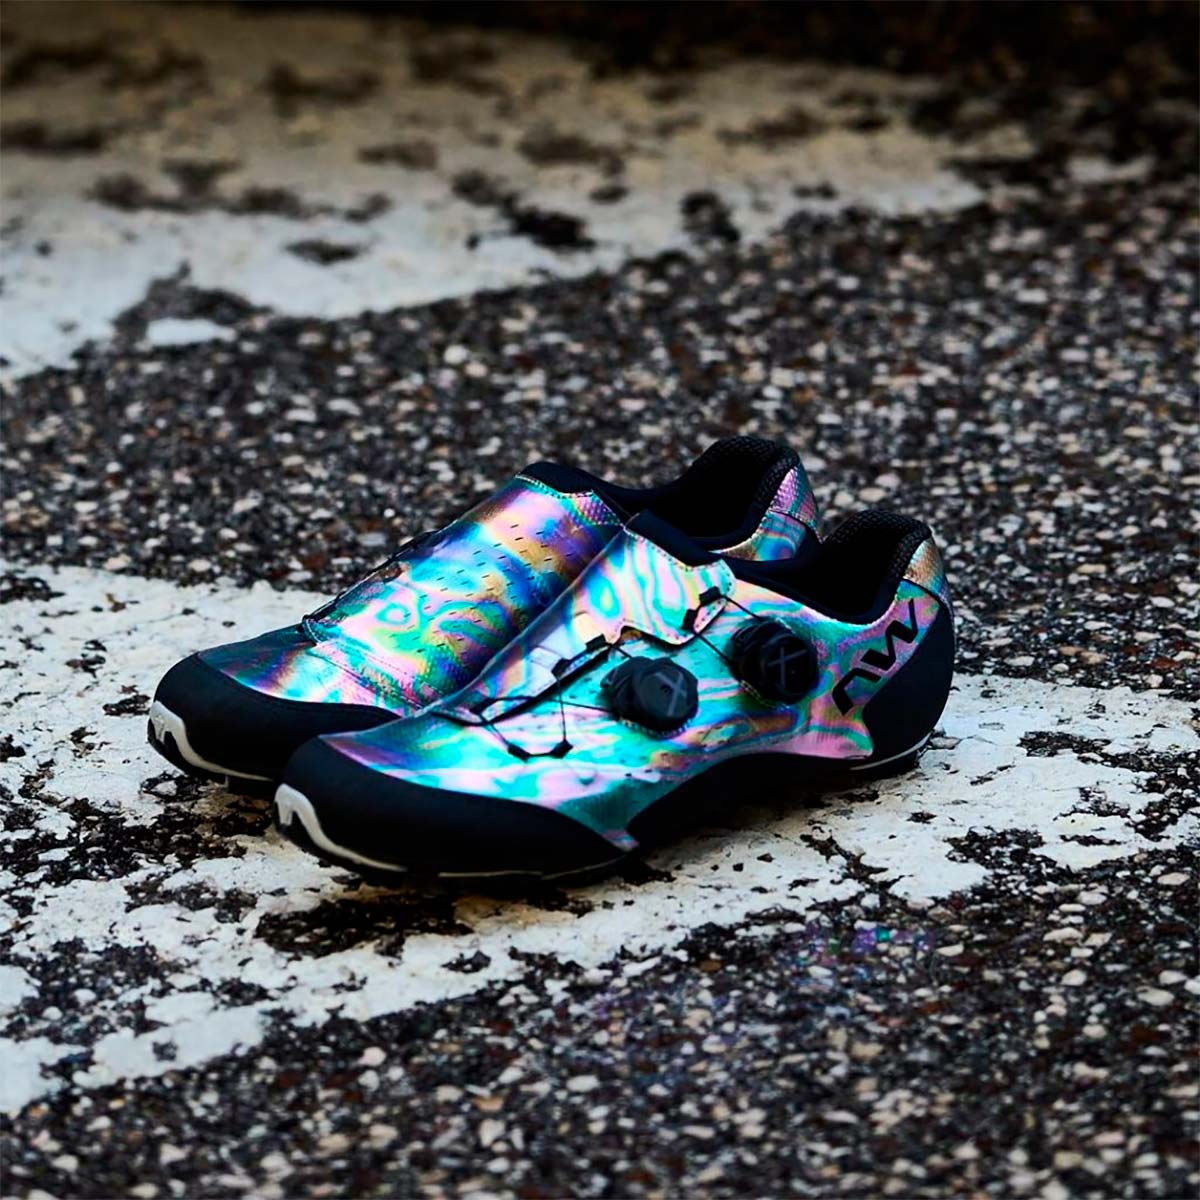 En TodoMountainBike: Northwave Ghost Pro en color Oil Slick, las zapatillas de XC más espectaculares de la marca